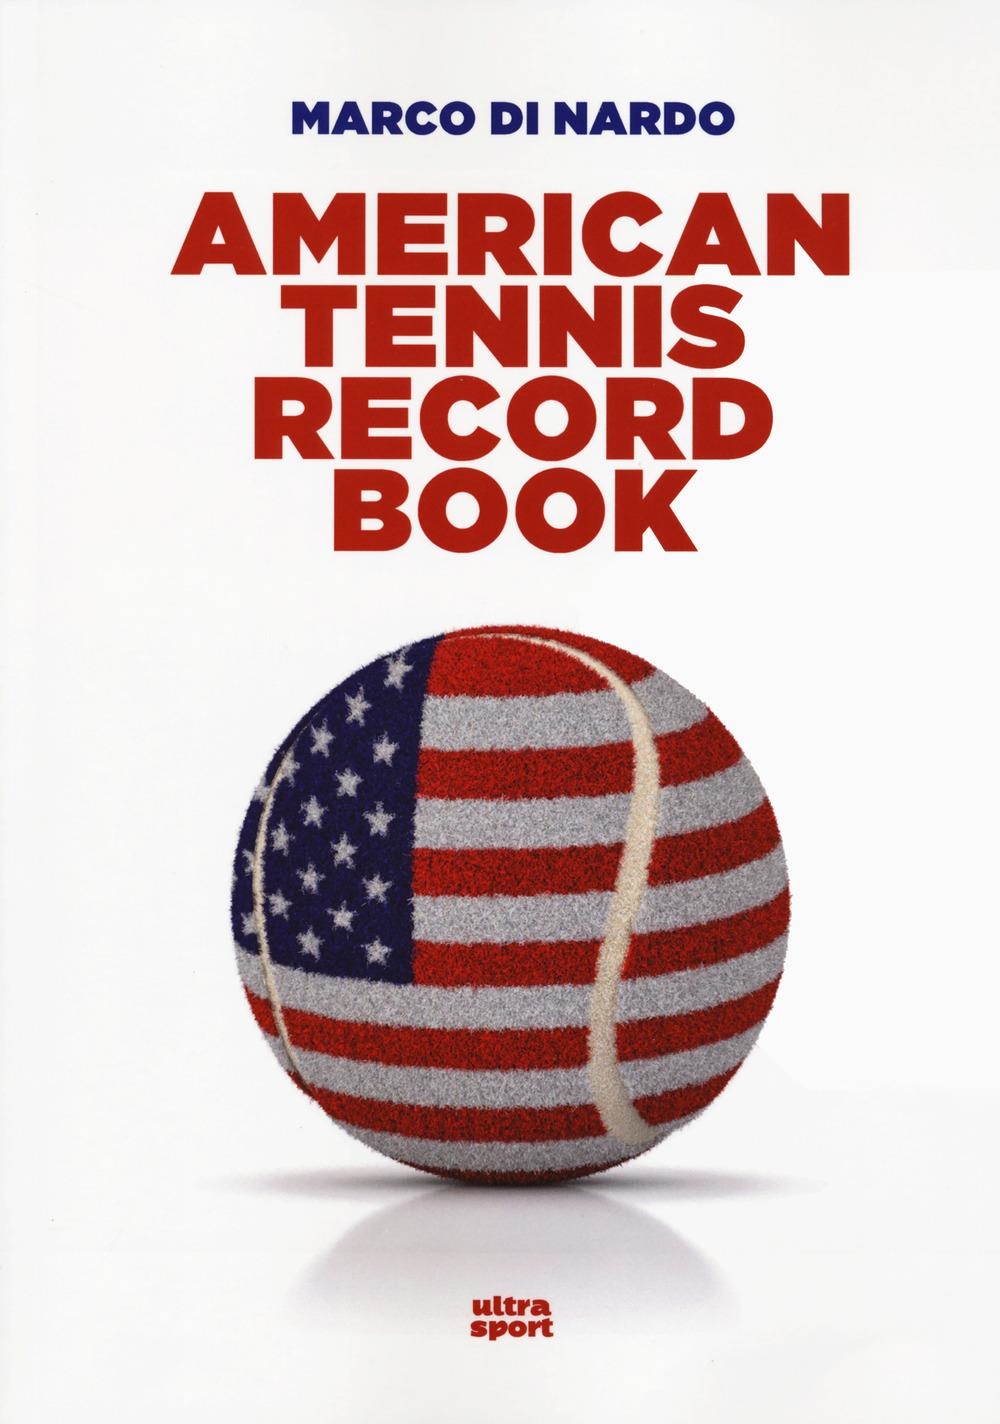 Libri Di Nardo Marco - American Tennis Record Book. Tutti I Numeri Del Tennis U.S.A. NUOVO SIGILLATO, EDIZIONE DEL 06/02/2024 SUBITO DISPONIBILE